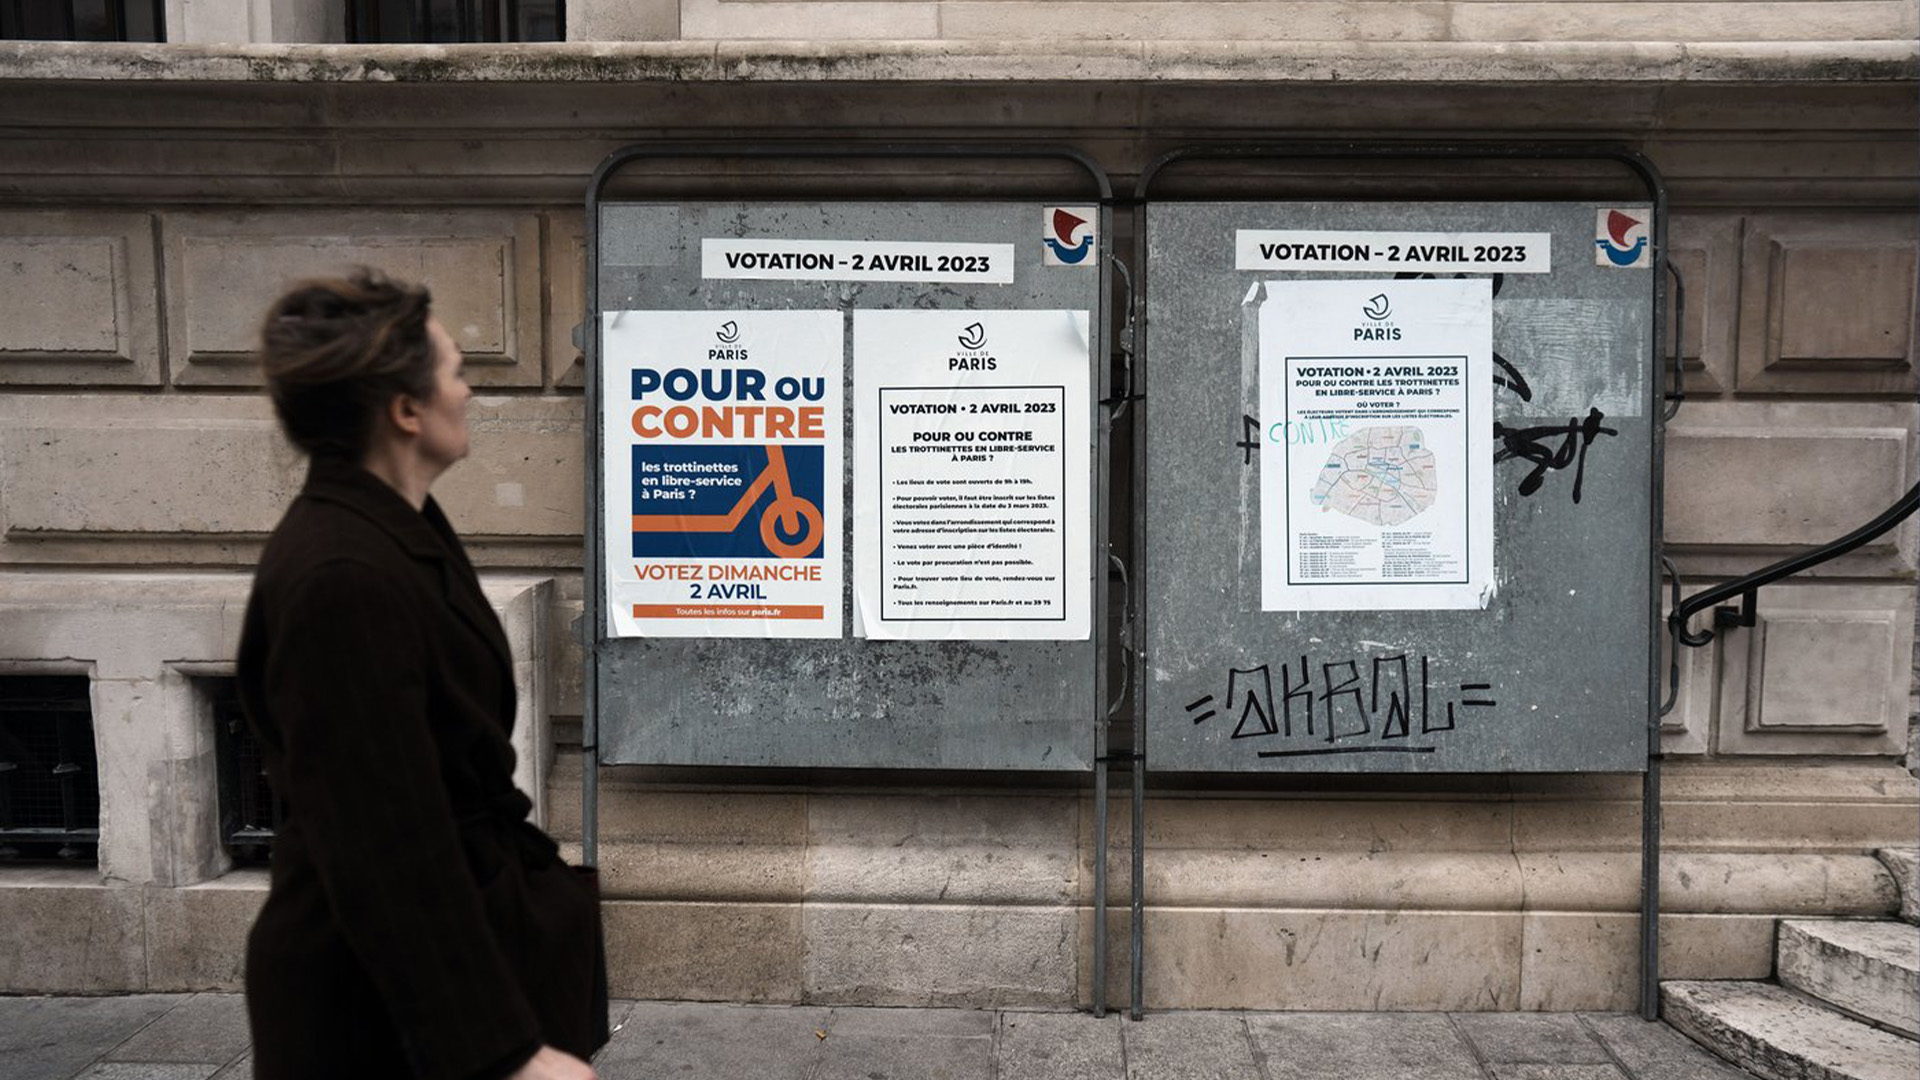 Une femme passe devant une affiche indiquant «Pour ou contre les scooters en libre service à Paris» sur la façade de l'hôtel de ville du 10e arrondissement de Paris, dimanche 2 avril 2023.